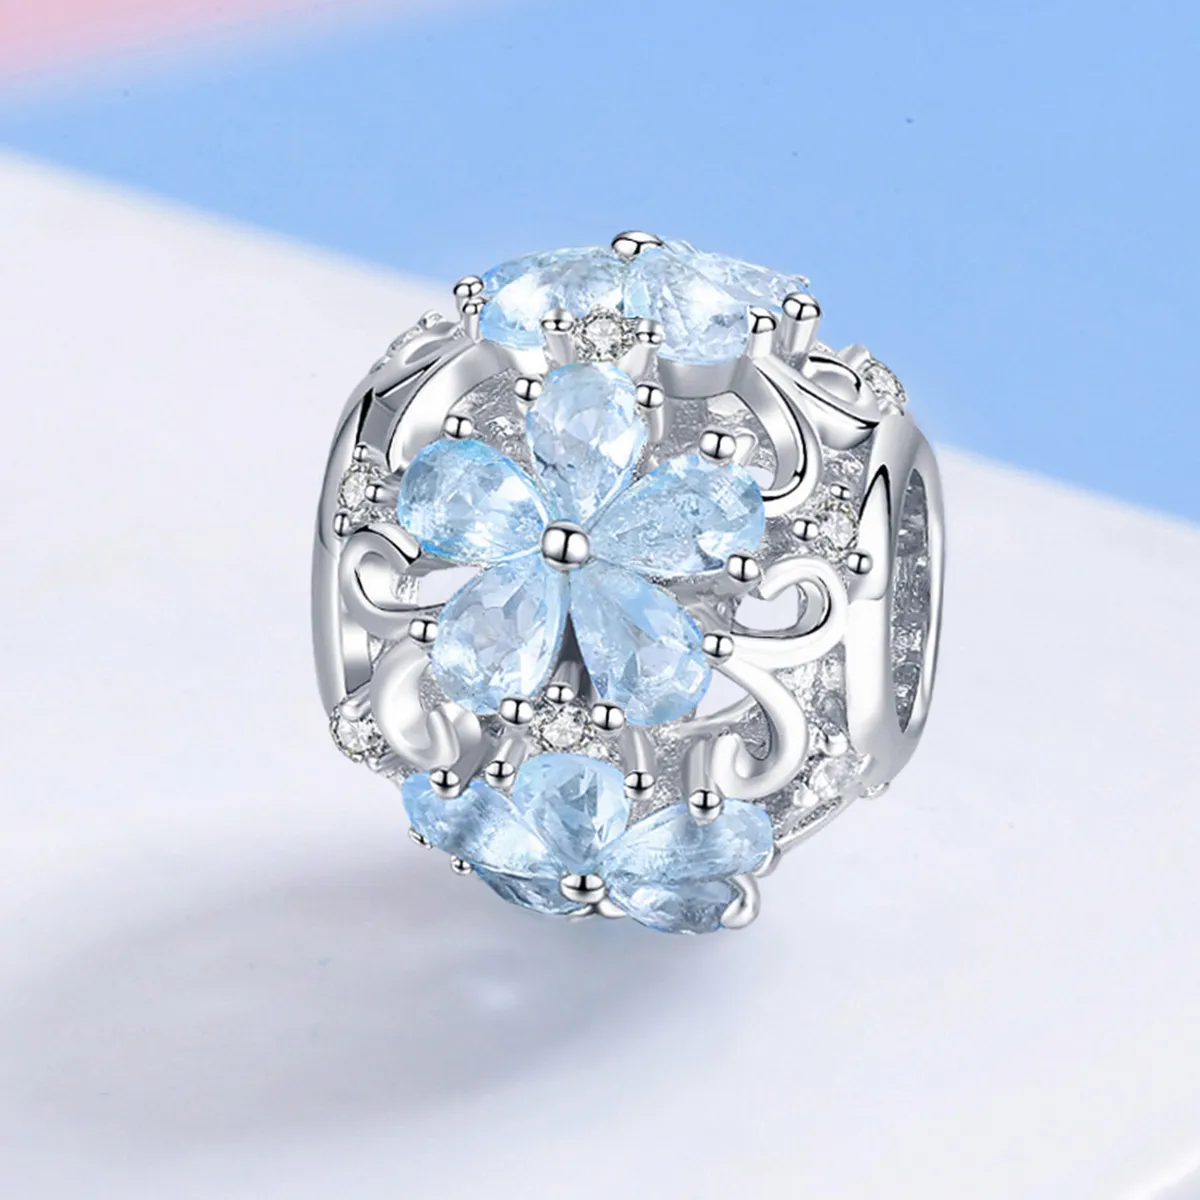 Pandora Style Silver Elegant Snowflakes Charm - SCC941